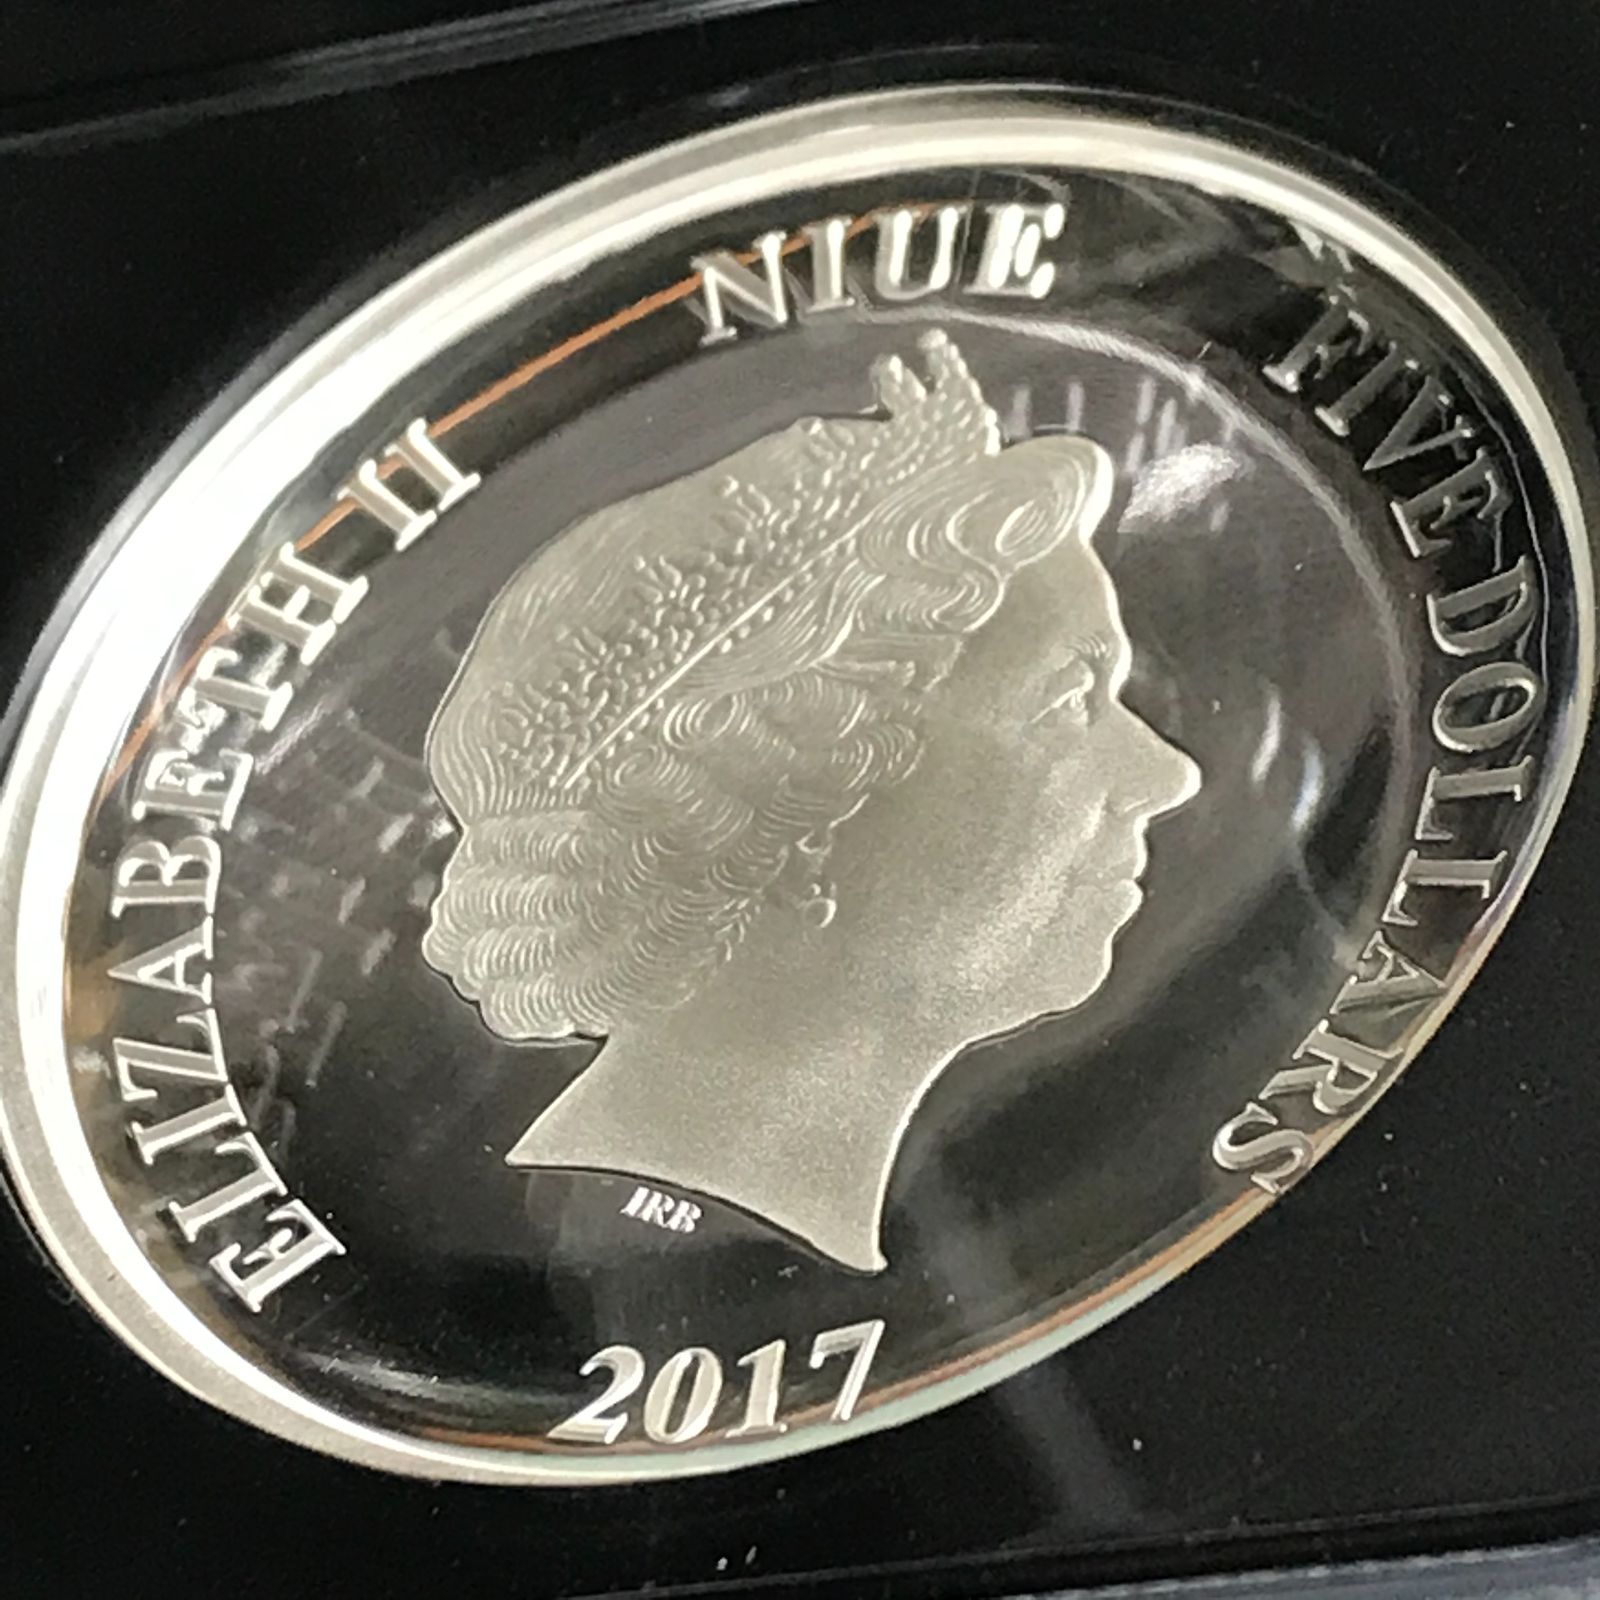 銀貨 ダースベイダー スターウォーズ 2017 PF70 NGC ニウエ コイン